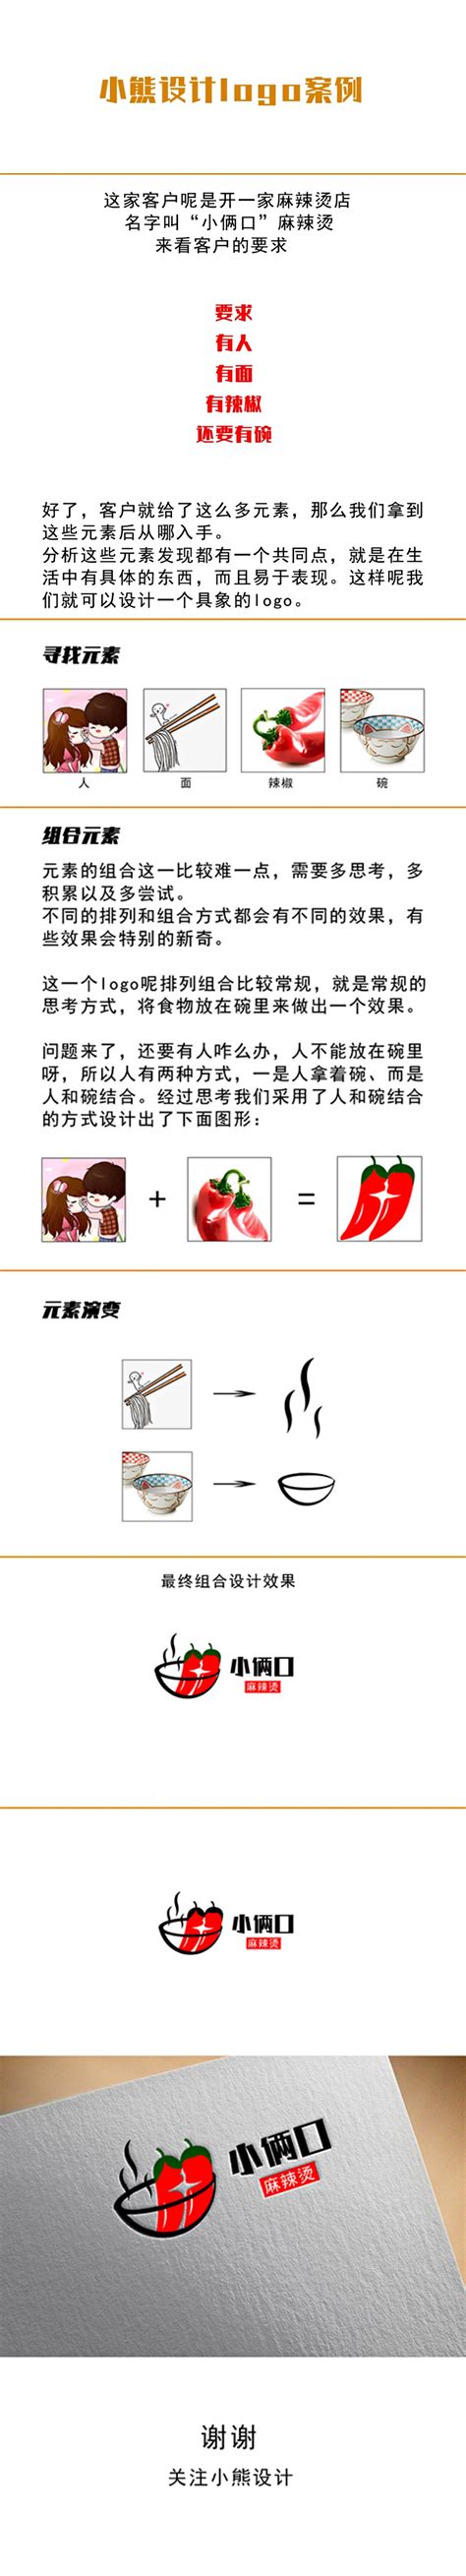 实例解读中文字体设计思路详细(2) - PS教程网